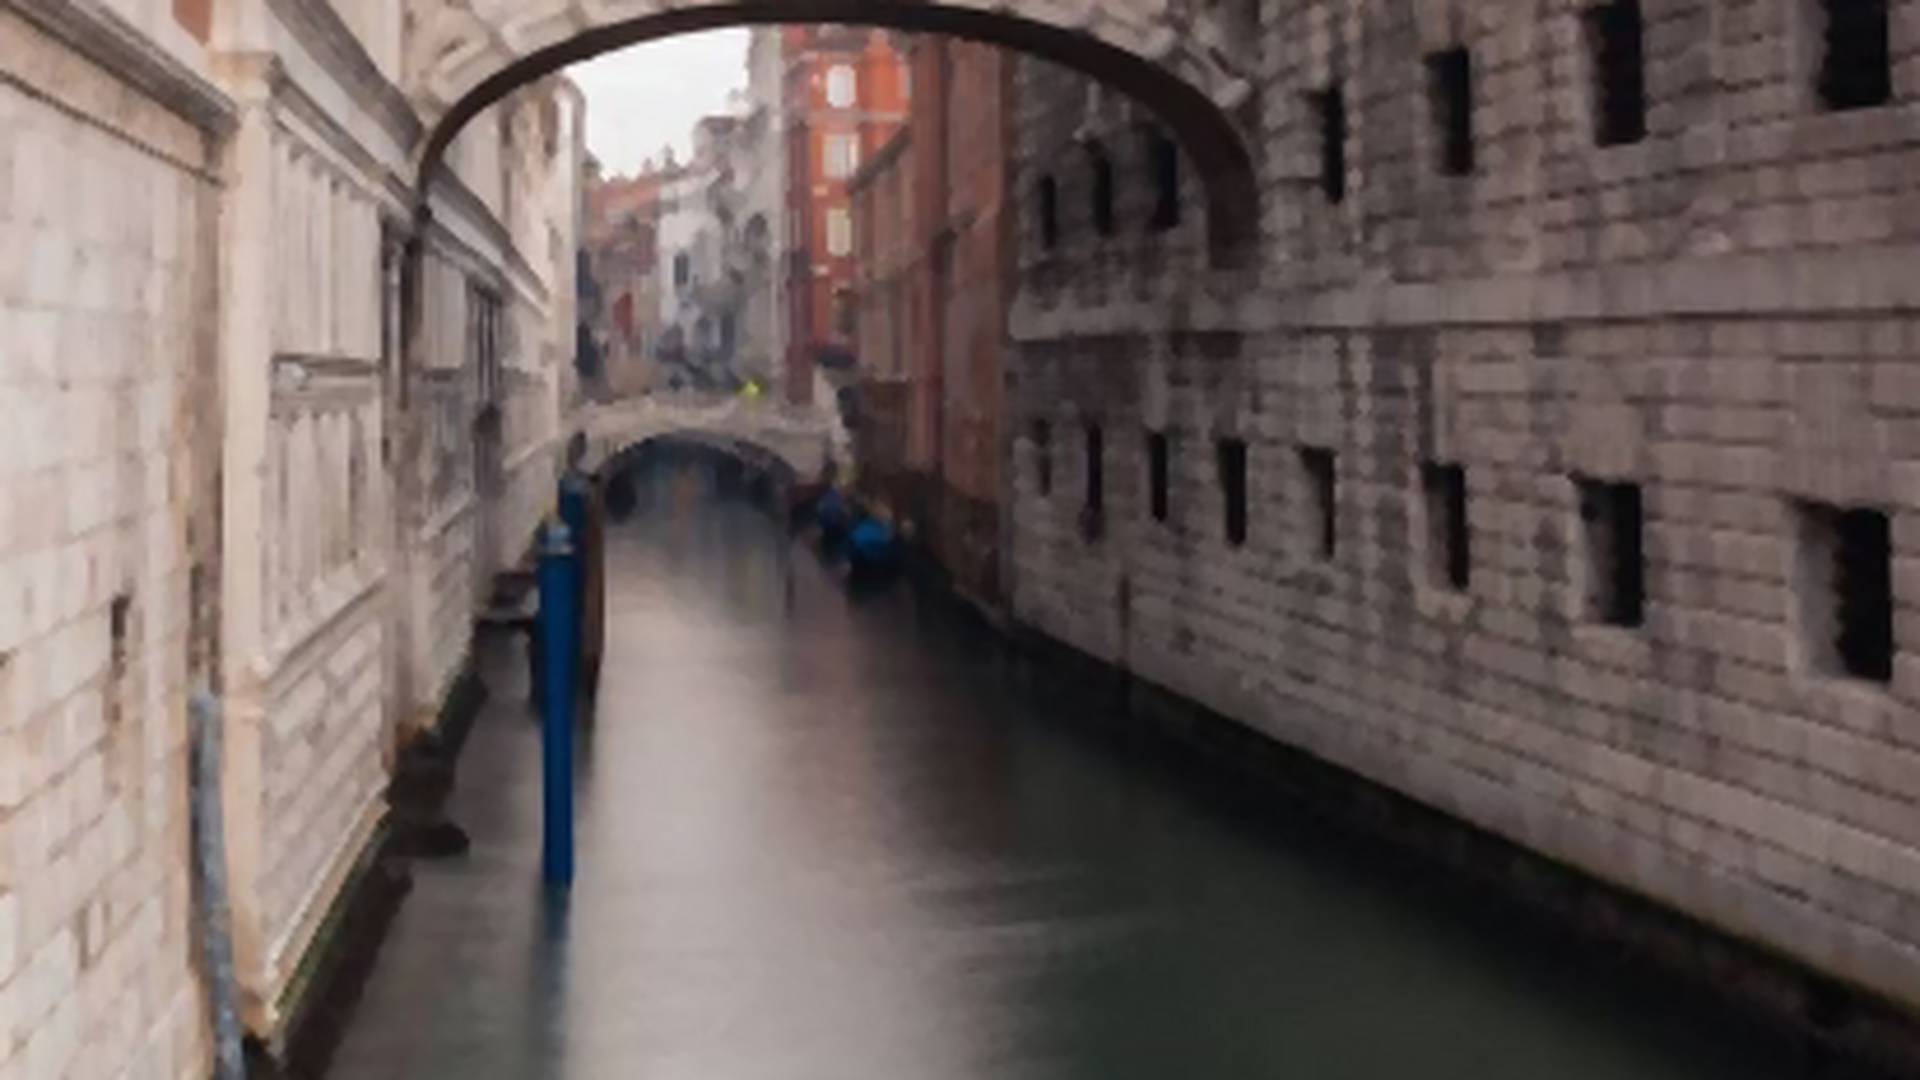 Turisti su napustili Veneciju i u sred crnila korone - desilo se nešto divno